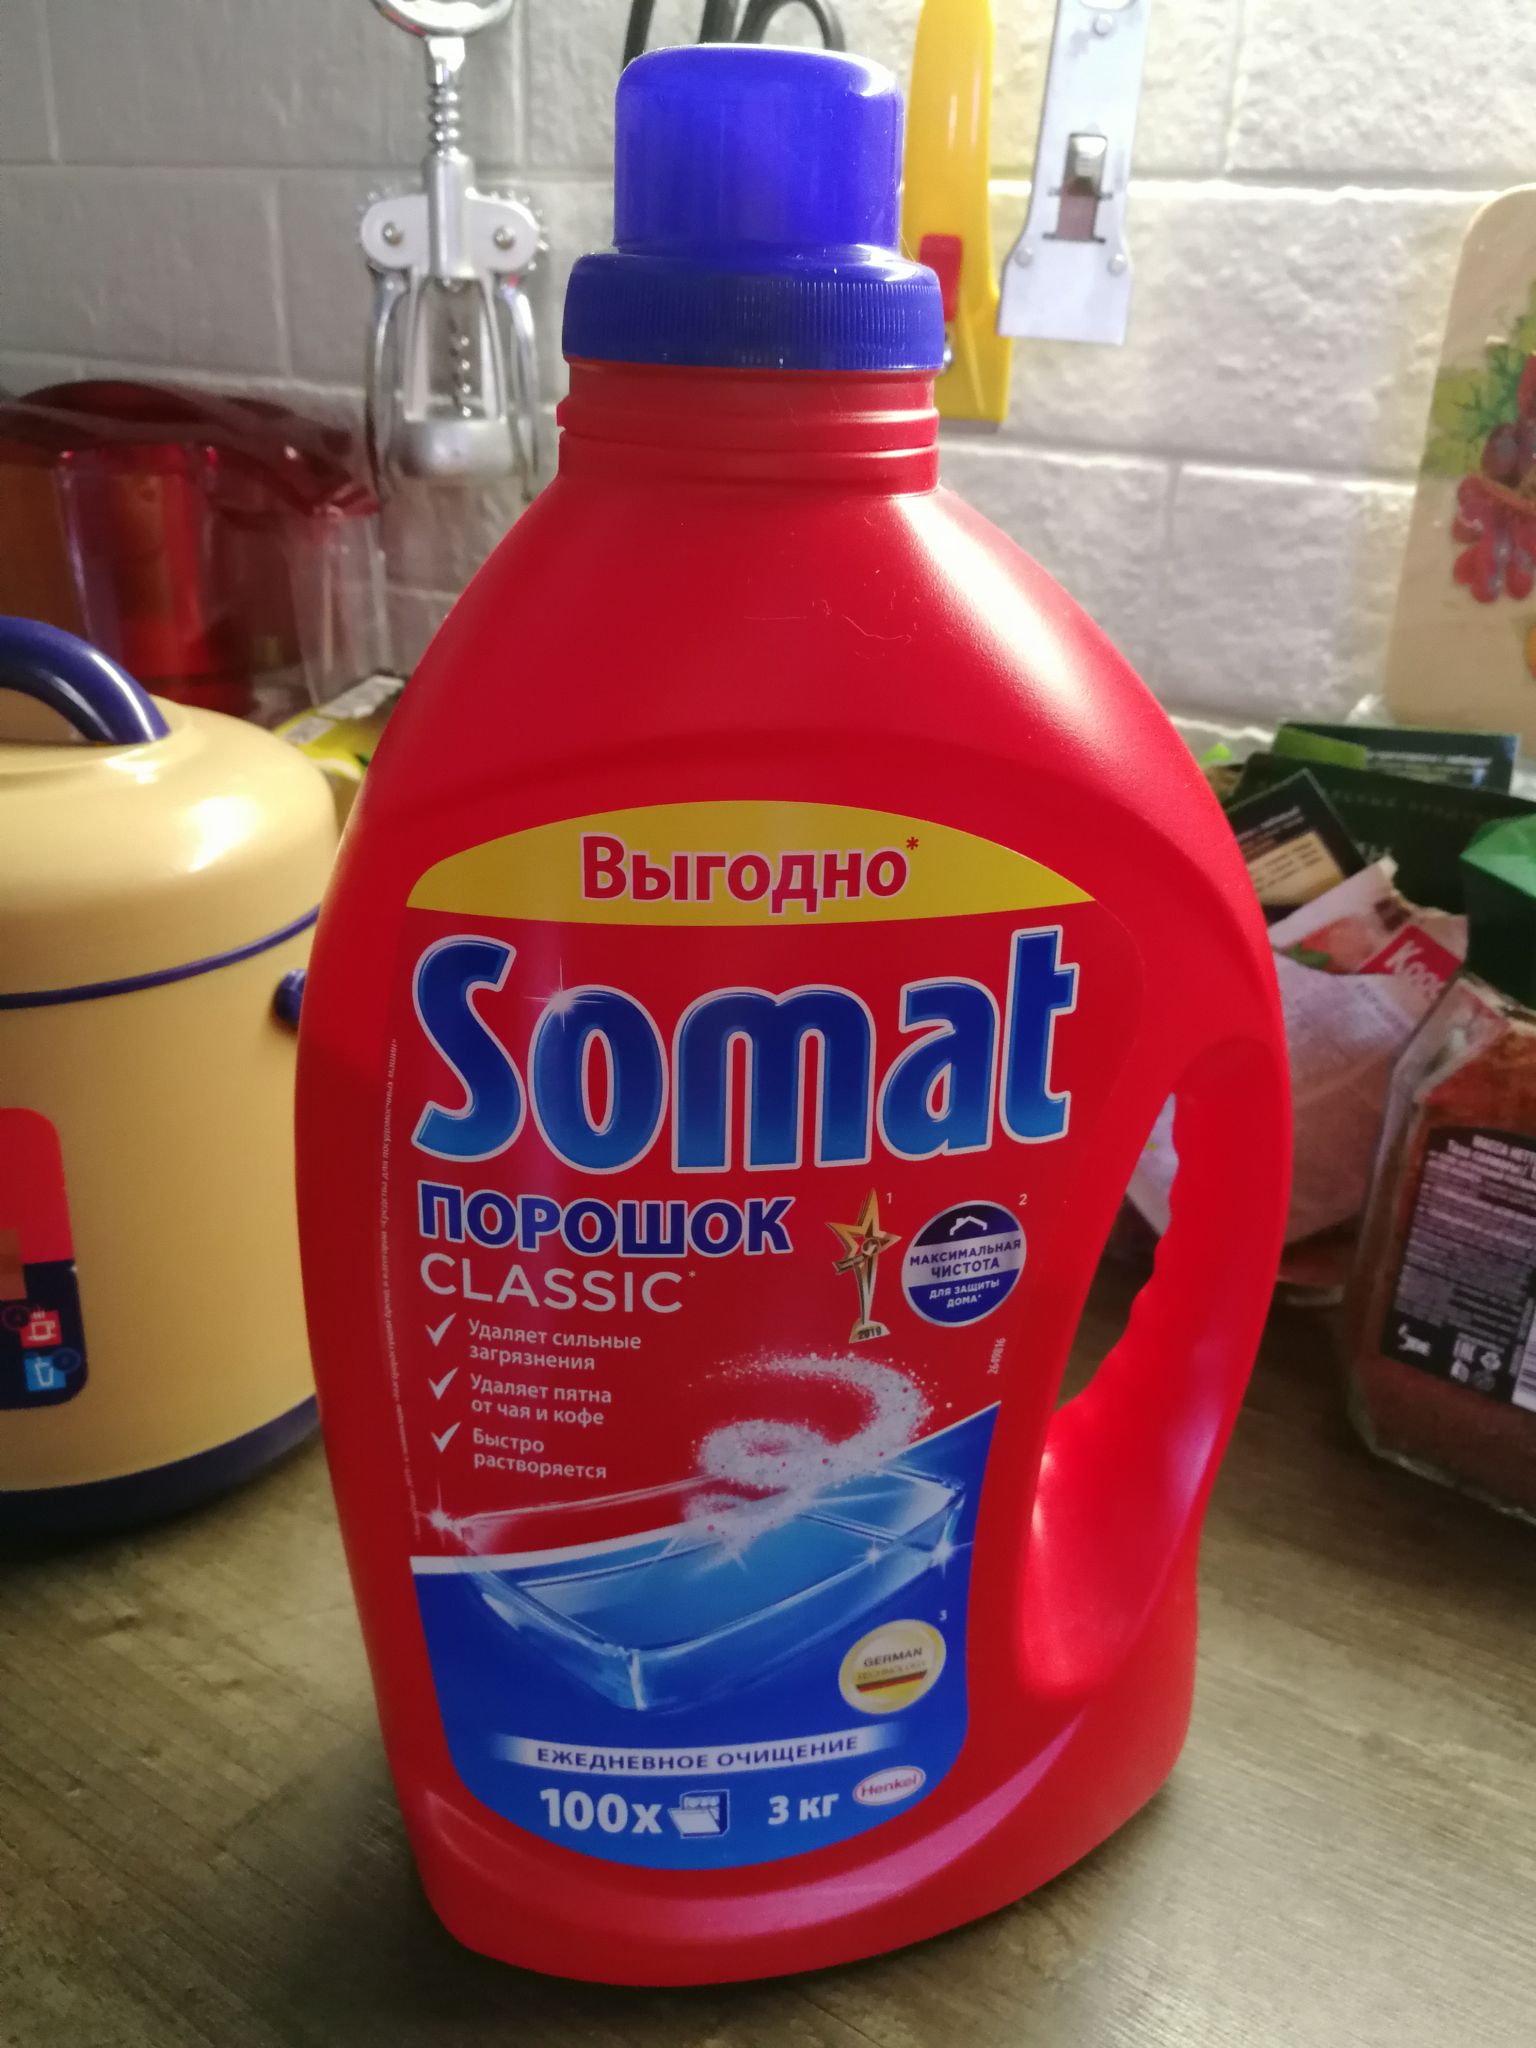 Порошок для посудомоечной машины 3 кг. Сомат для посудомоечных машин порошок 3. Somat порошок для посудомоечных машин 3 кг. Порошок для ПММ Somat Classic 3 кг. Порошок для ПММ Somat 3кг.